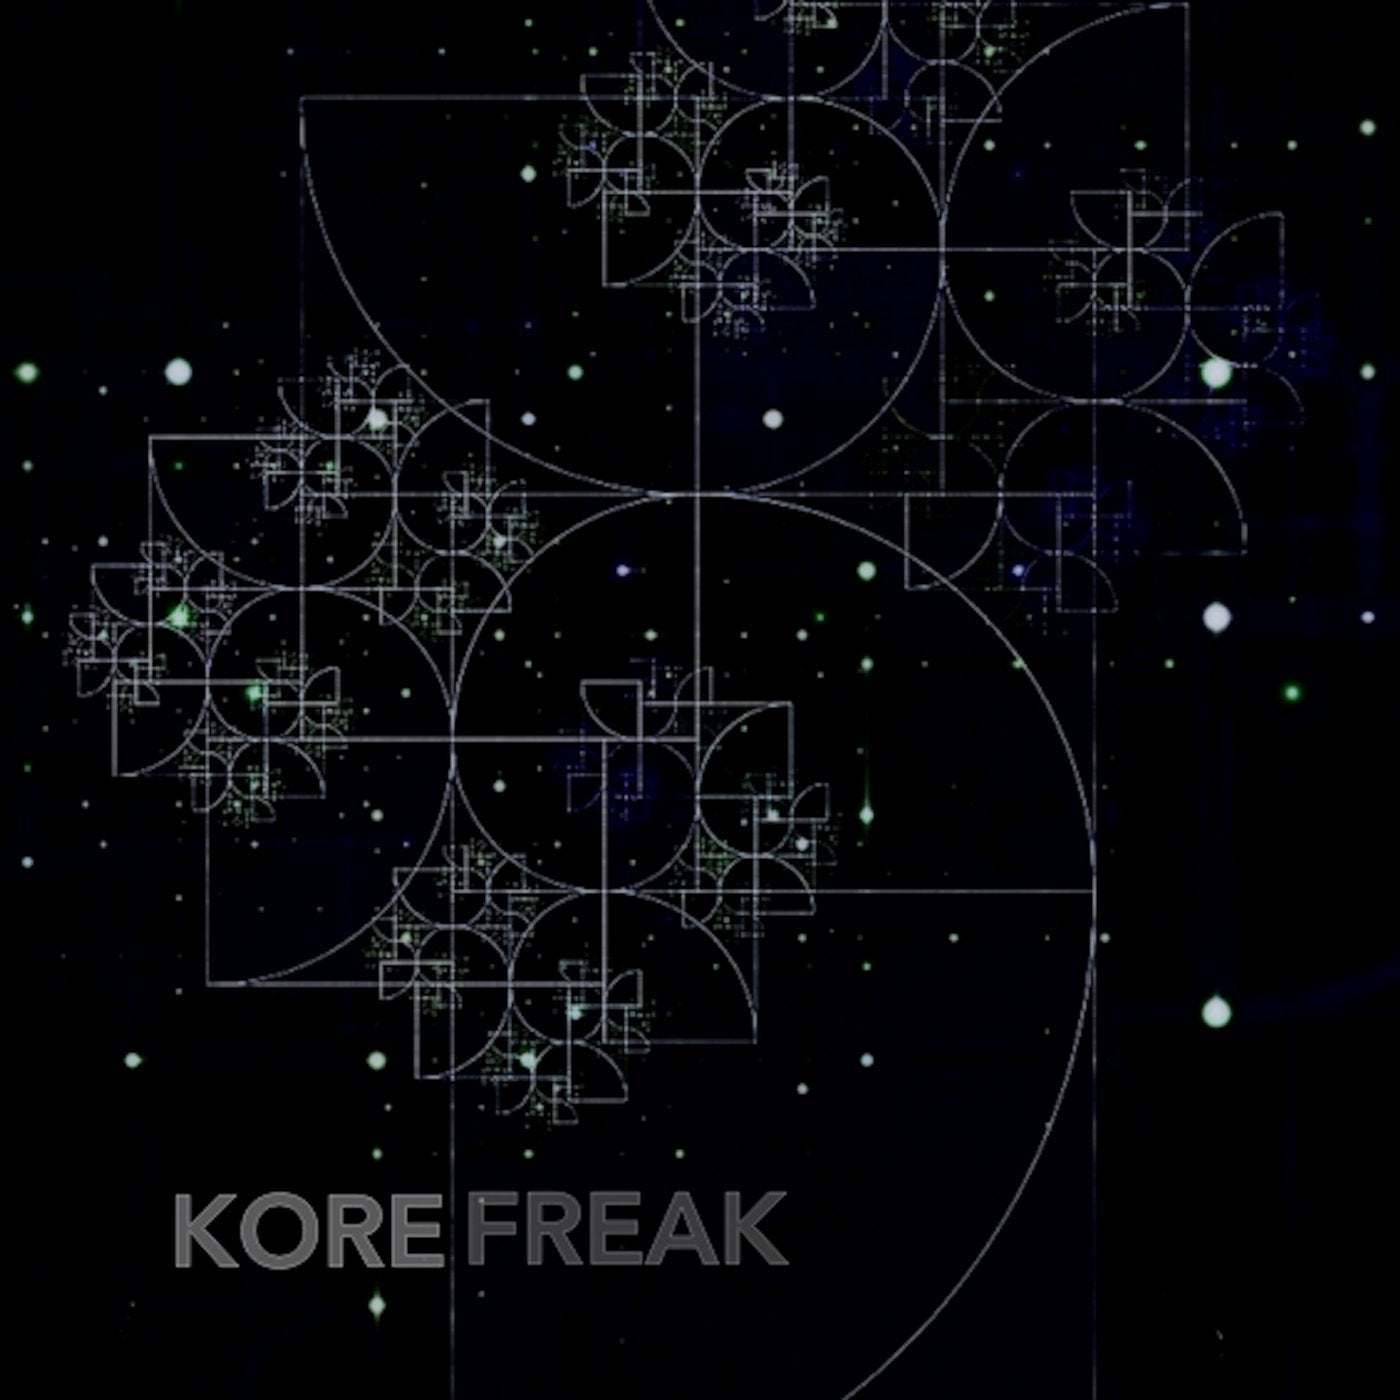 Kore Freak